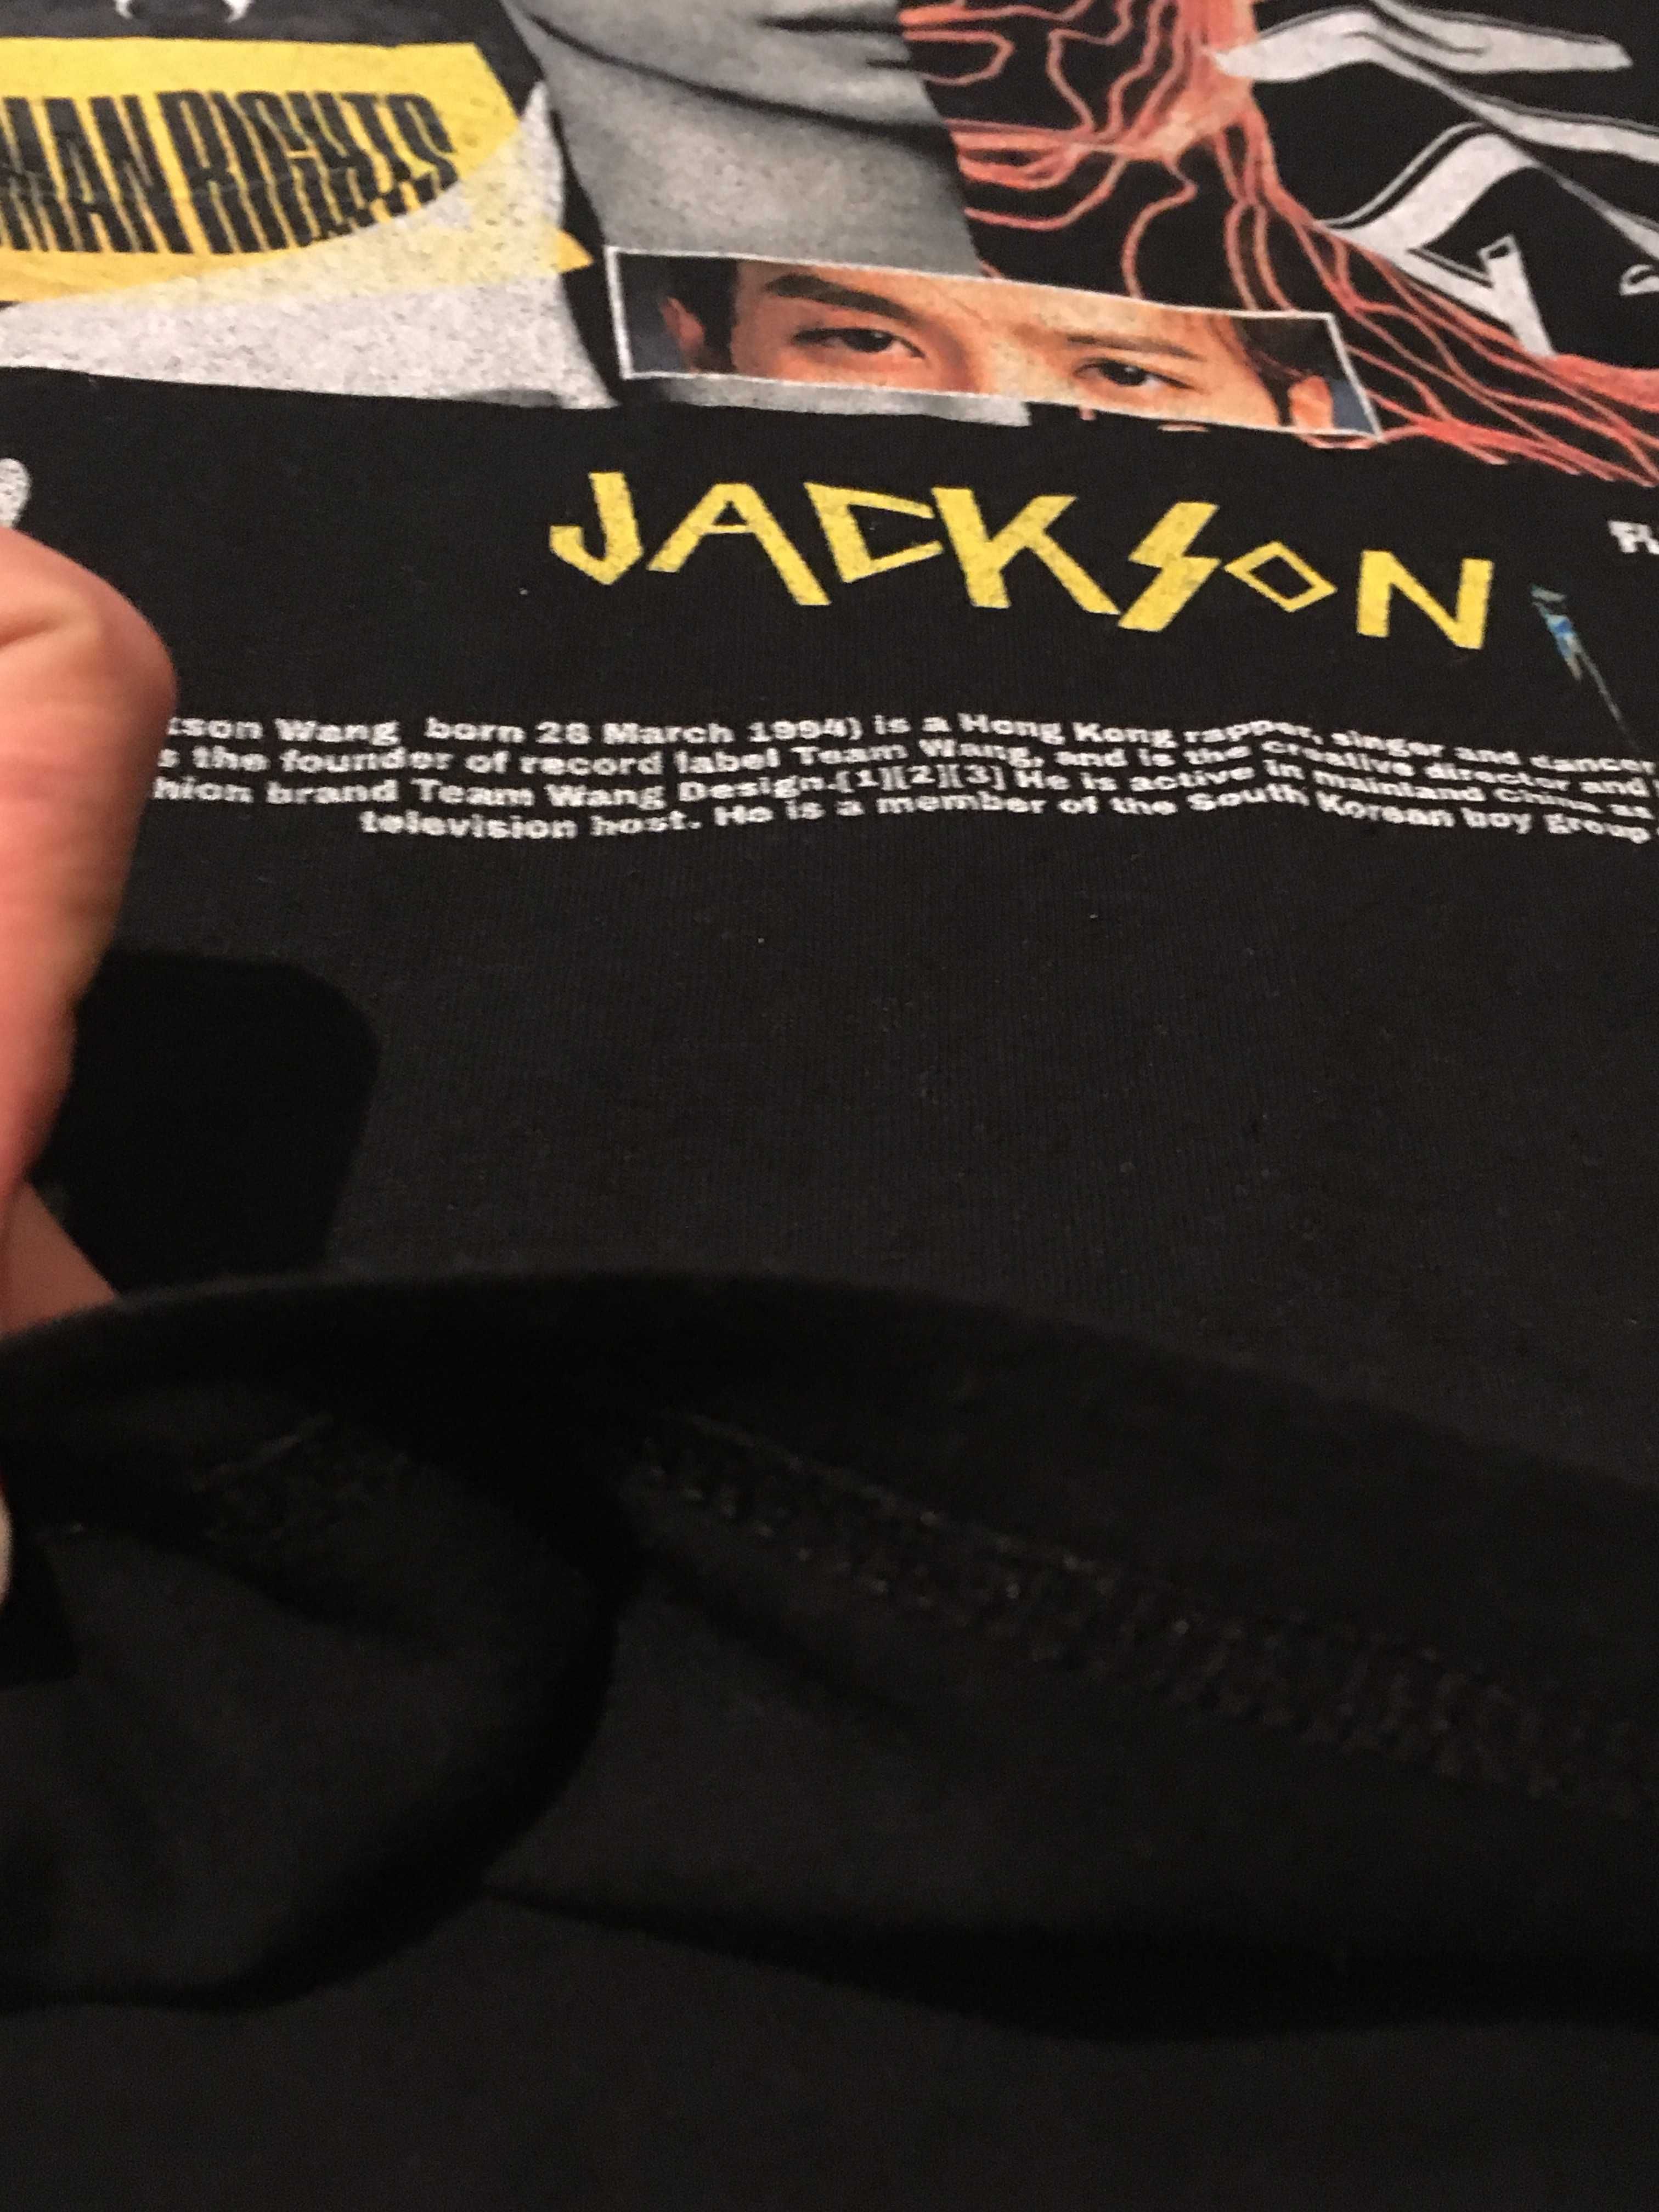 Jackson Wang (GOT 7) tshirt